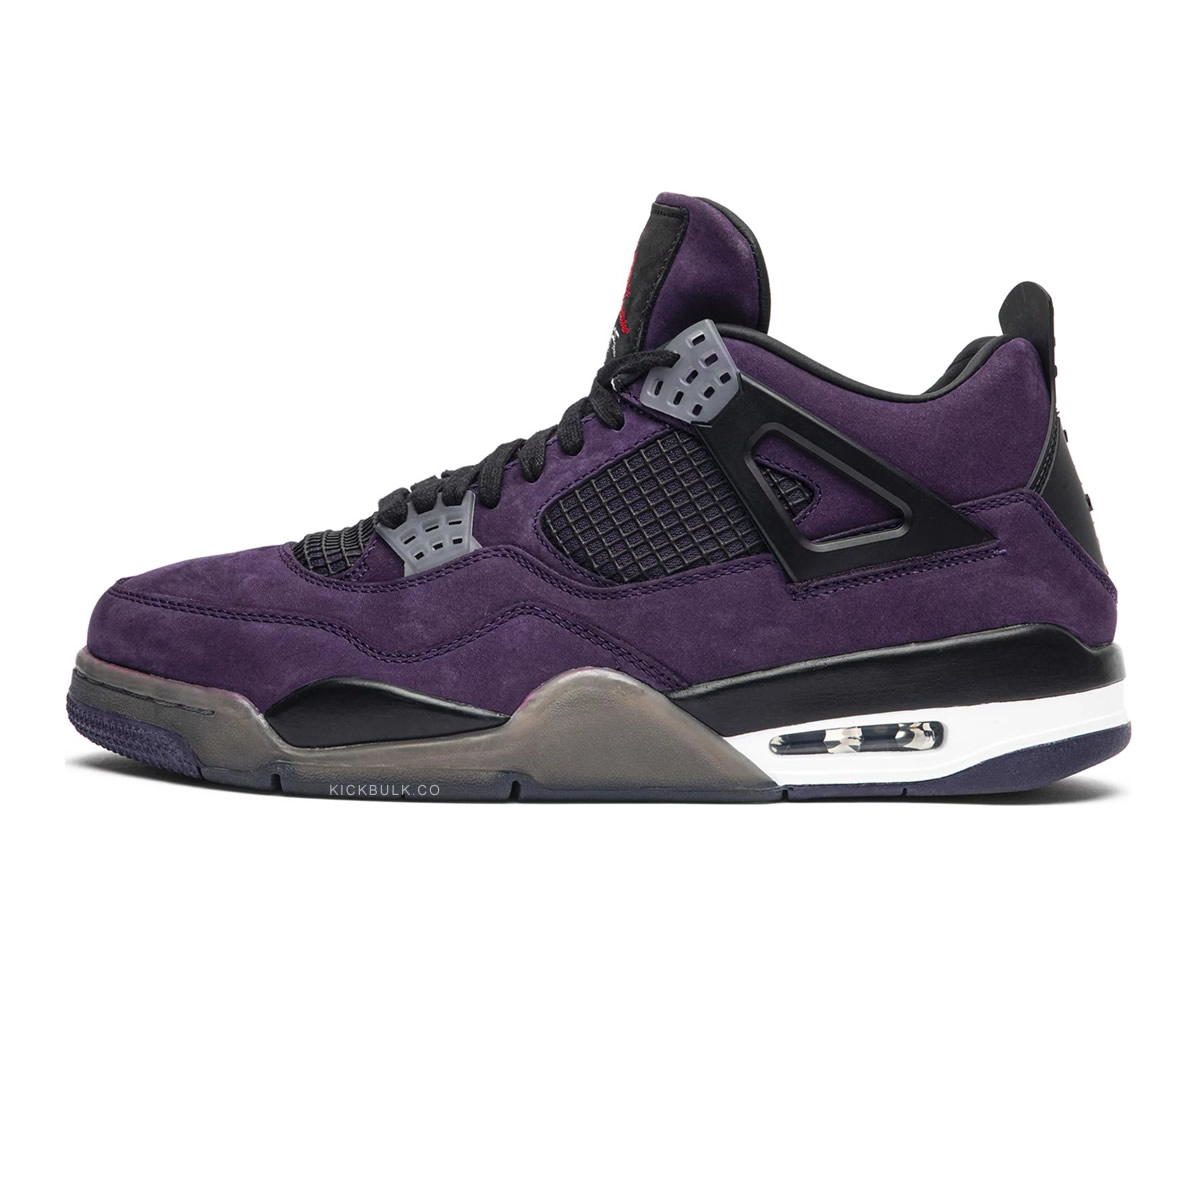 Travis Scott Air Jordan 4 Retro Purple Nike 766302 1 - www.kickbulk.org